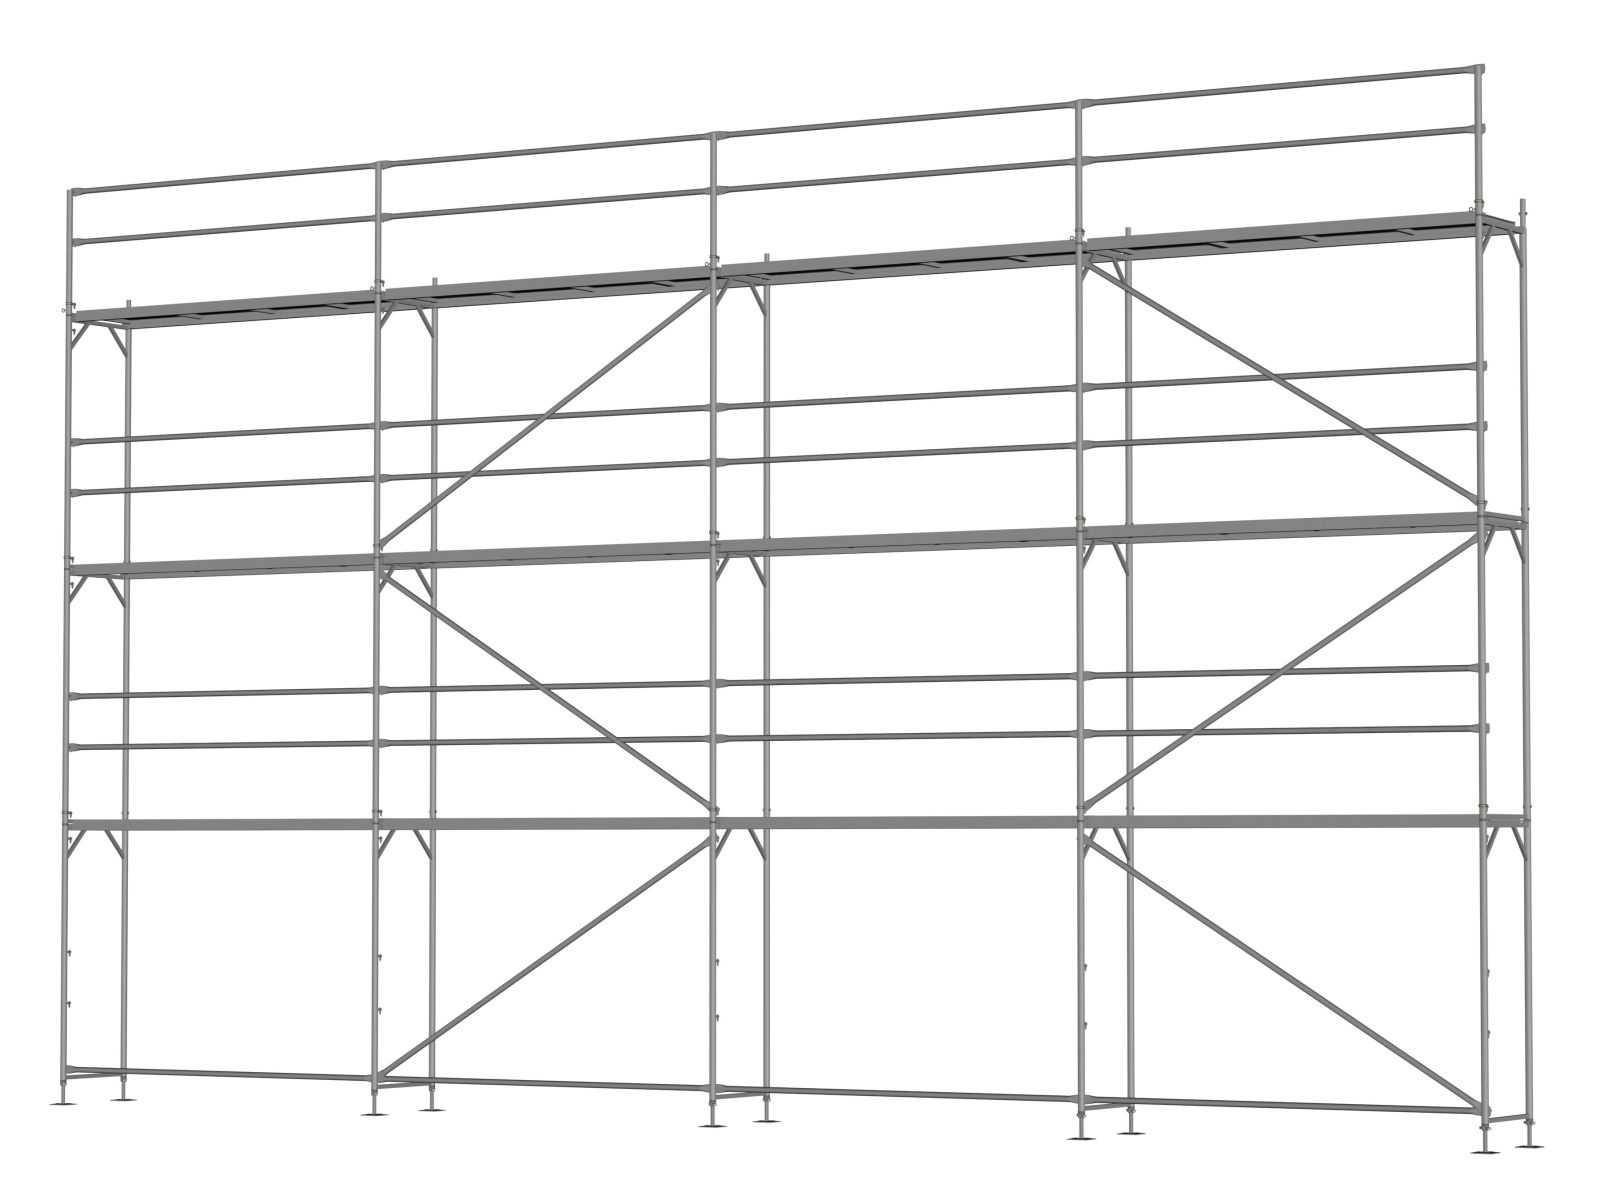 Stahl Traufseitengerüst 96 qm - 3,0 m Felder - 12 m lang - 8 m Arbeitshöhe - Basis-Gerüst